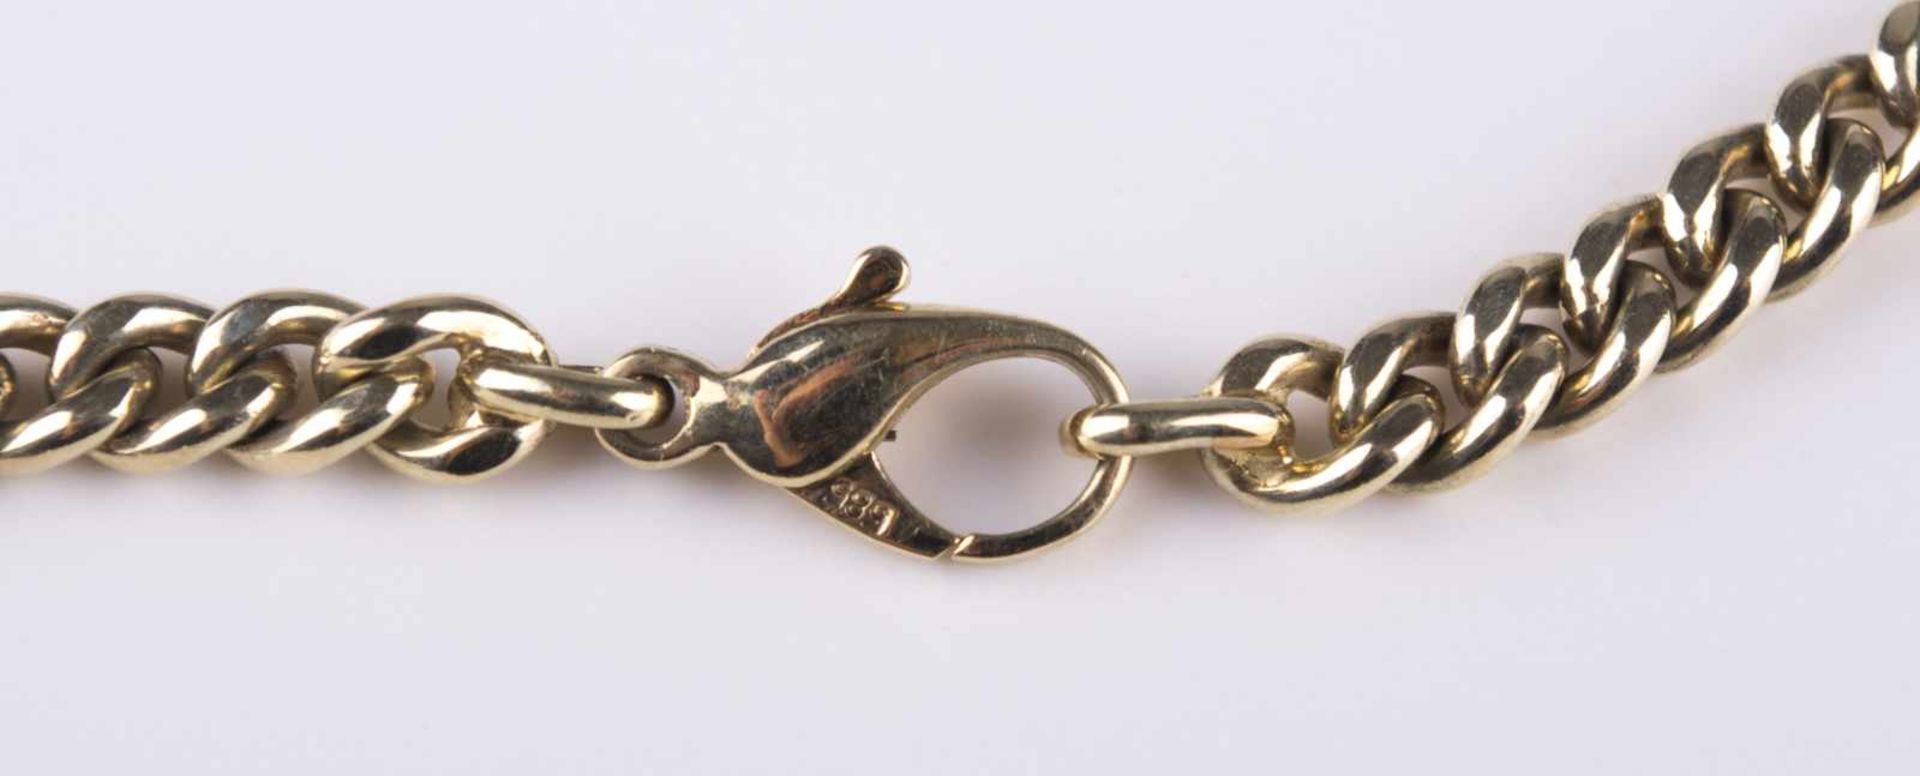 Schweres Damen-Collier / Heavy women´s necklace 585/000 GG, mit Edelsteinbesatz, Aquamarin, - Image 4 of 4